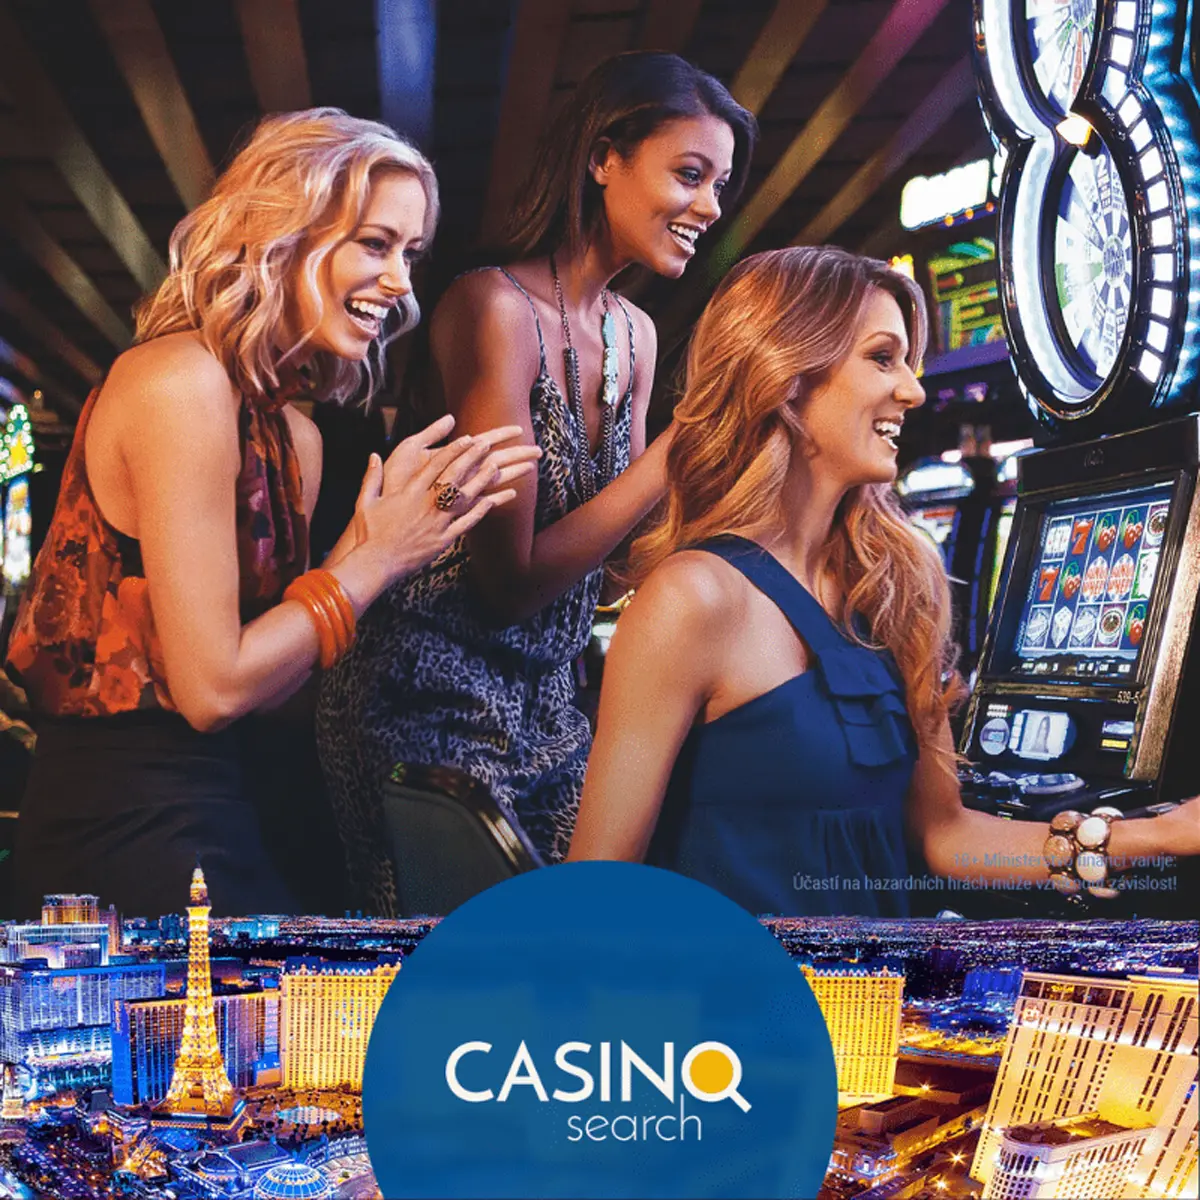 Jsou online kasino hry hazard? Nastavte si vlastní limity  užijte si jej jako skvělou zábavu.